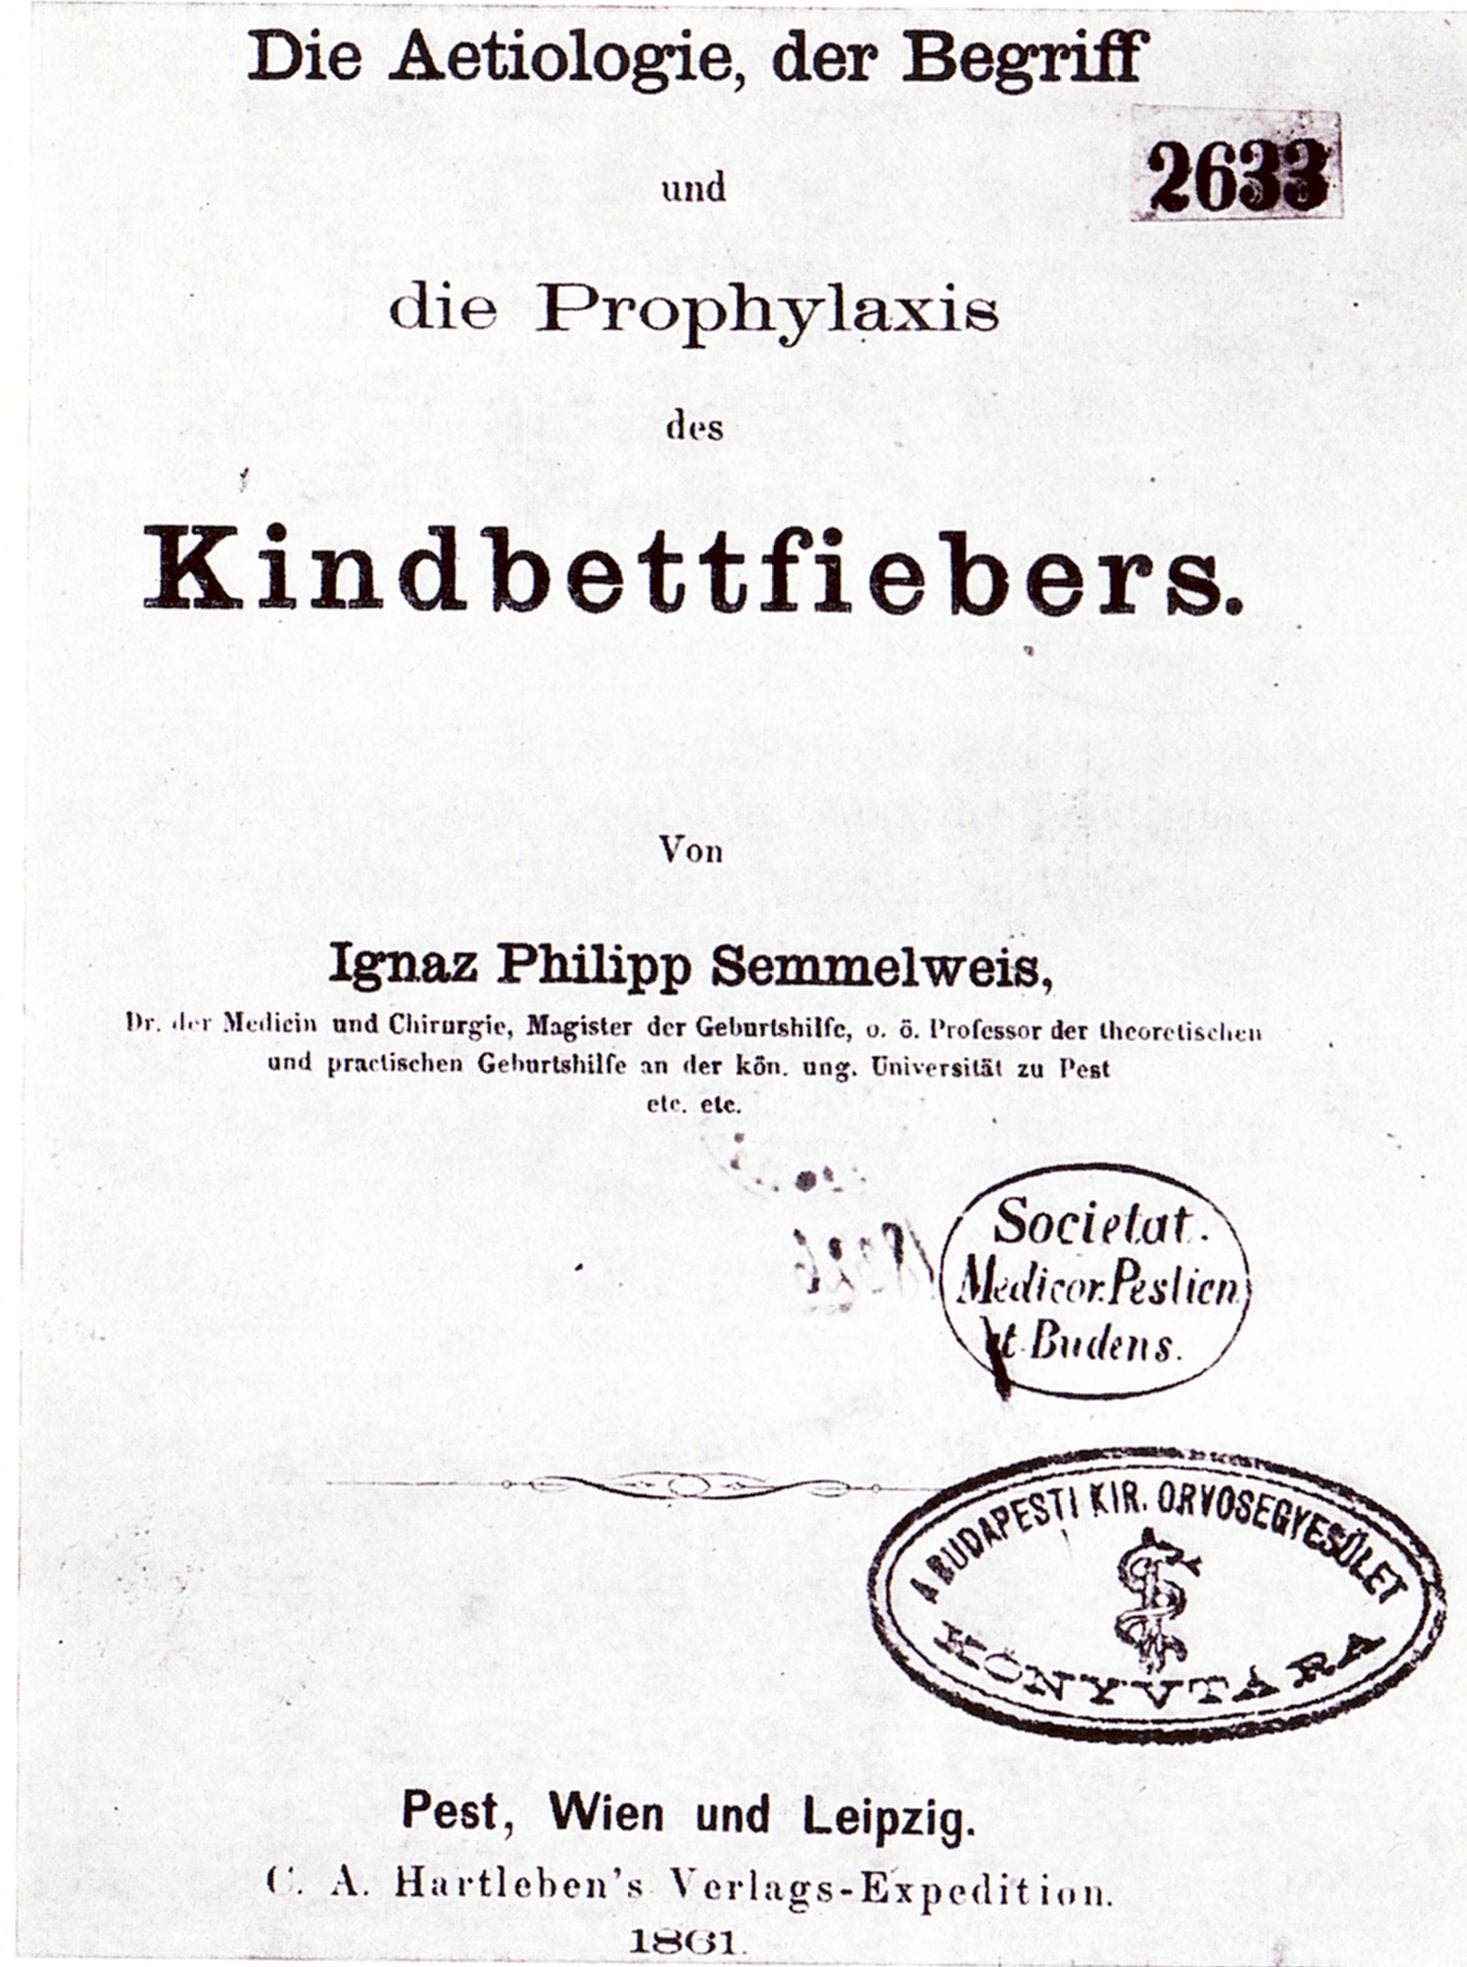 Deckblatt von Semmelweis' Veröffentlichung 